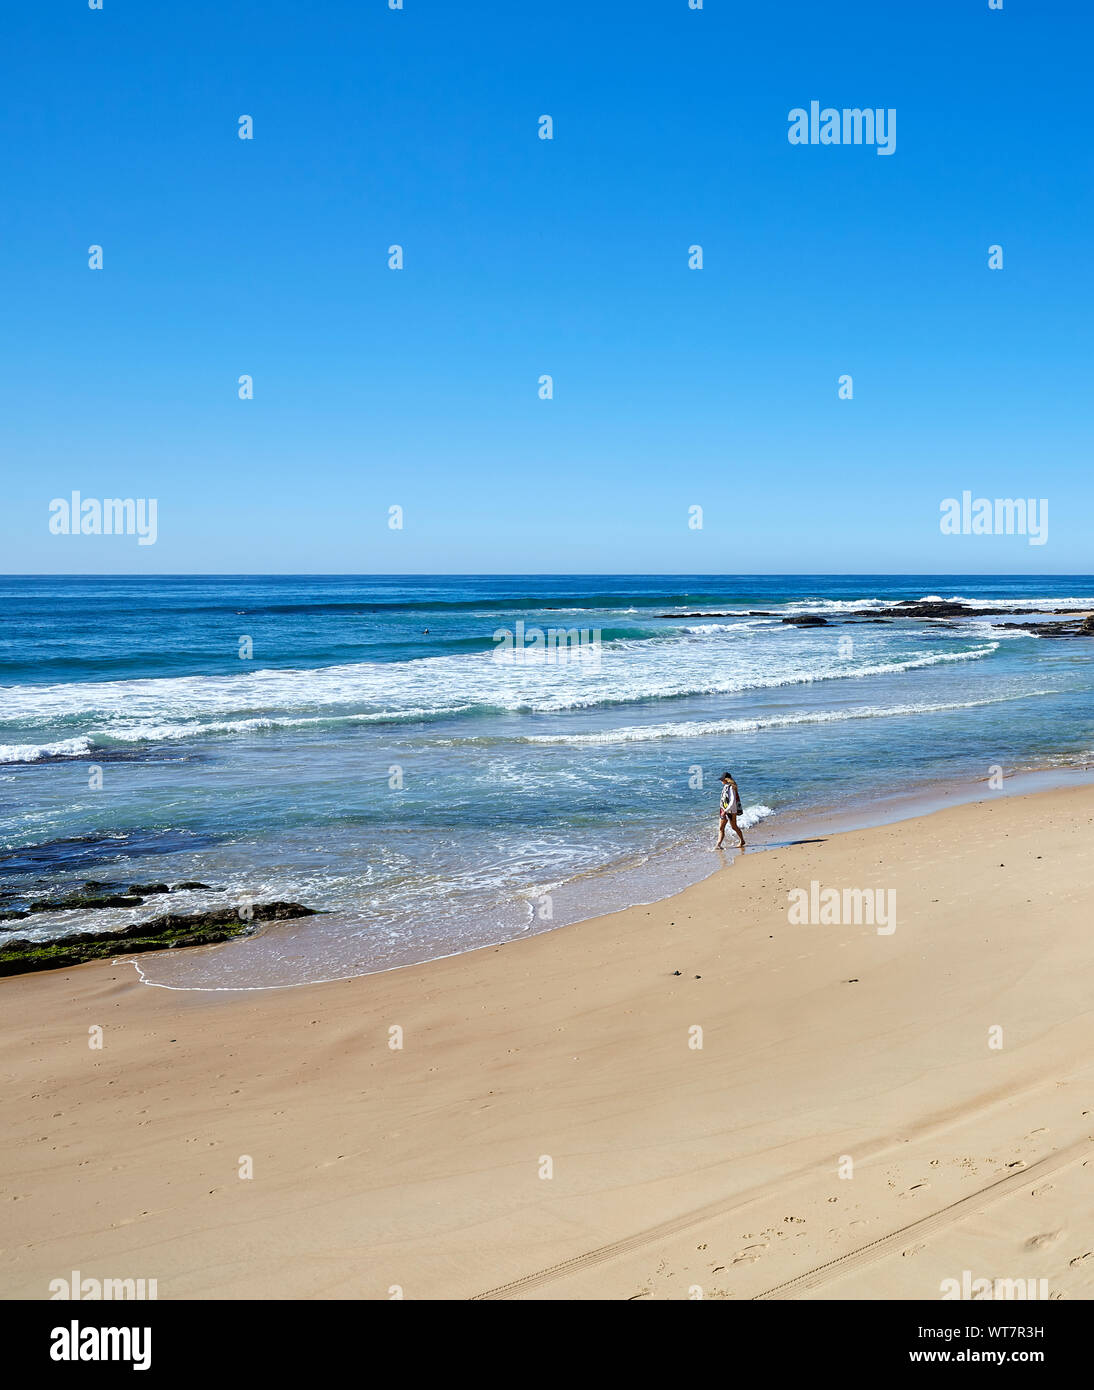 Vista de una playa con una persona en la distancia caminando por el borde de las aguas como la marea entra en un soleado día de otoño despejado en Australia Foto de stock